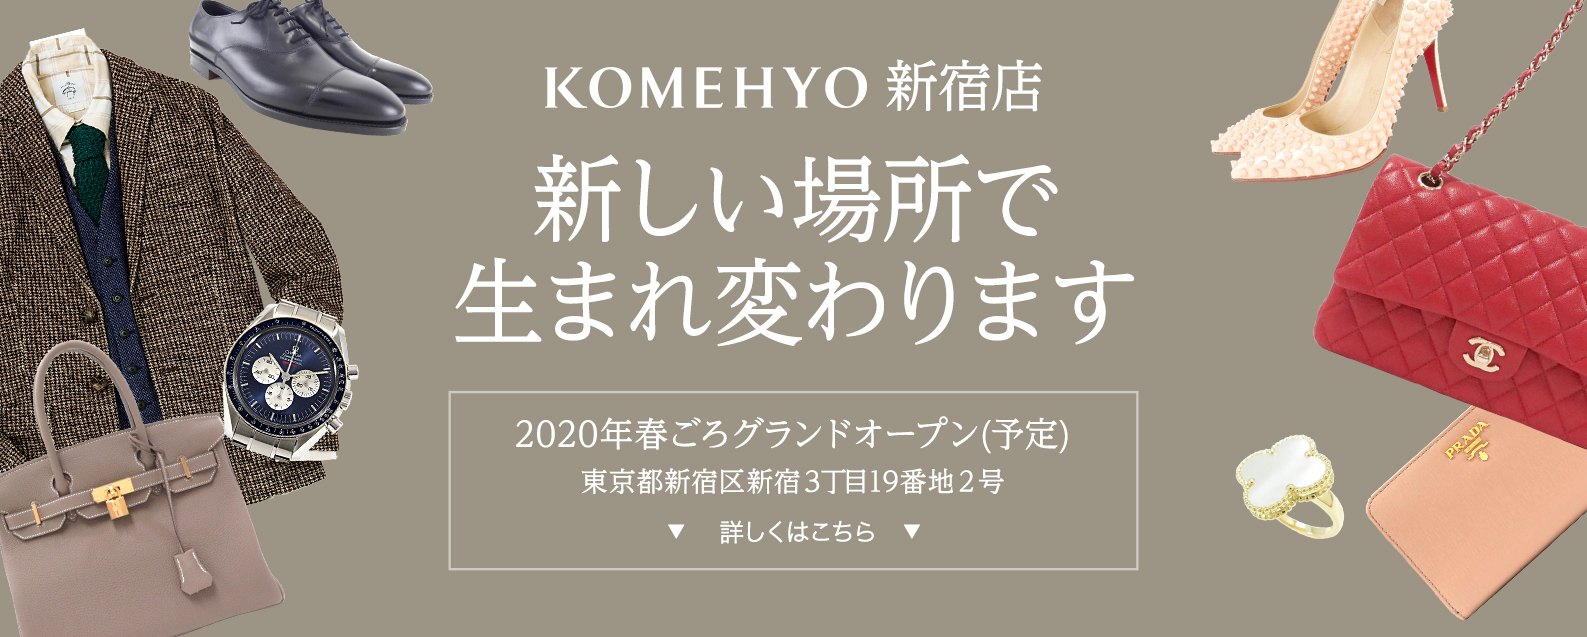 在KOMEHYO新宿商店新的地方新生的2020年春天goro隆重开幕(计划)东京都新宿区新宿3丁目19门牌2号